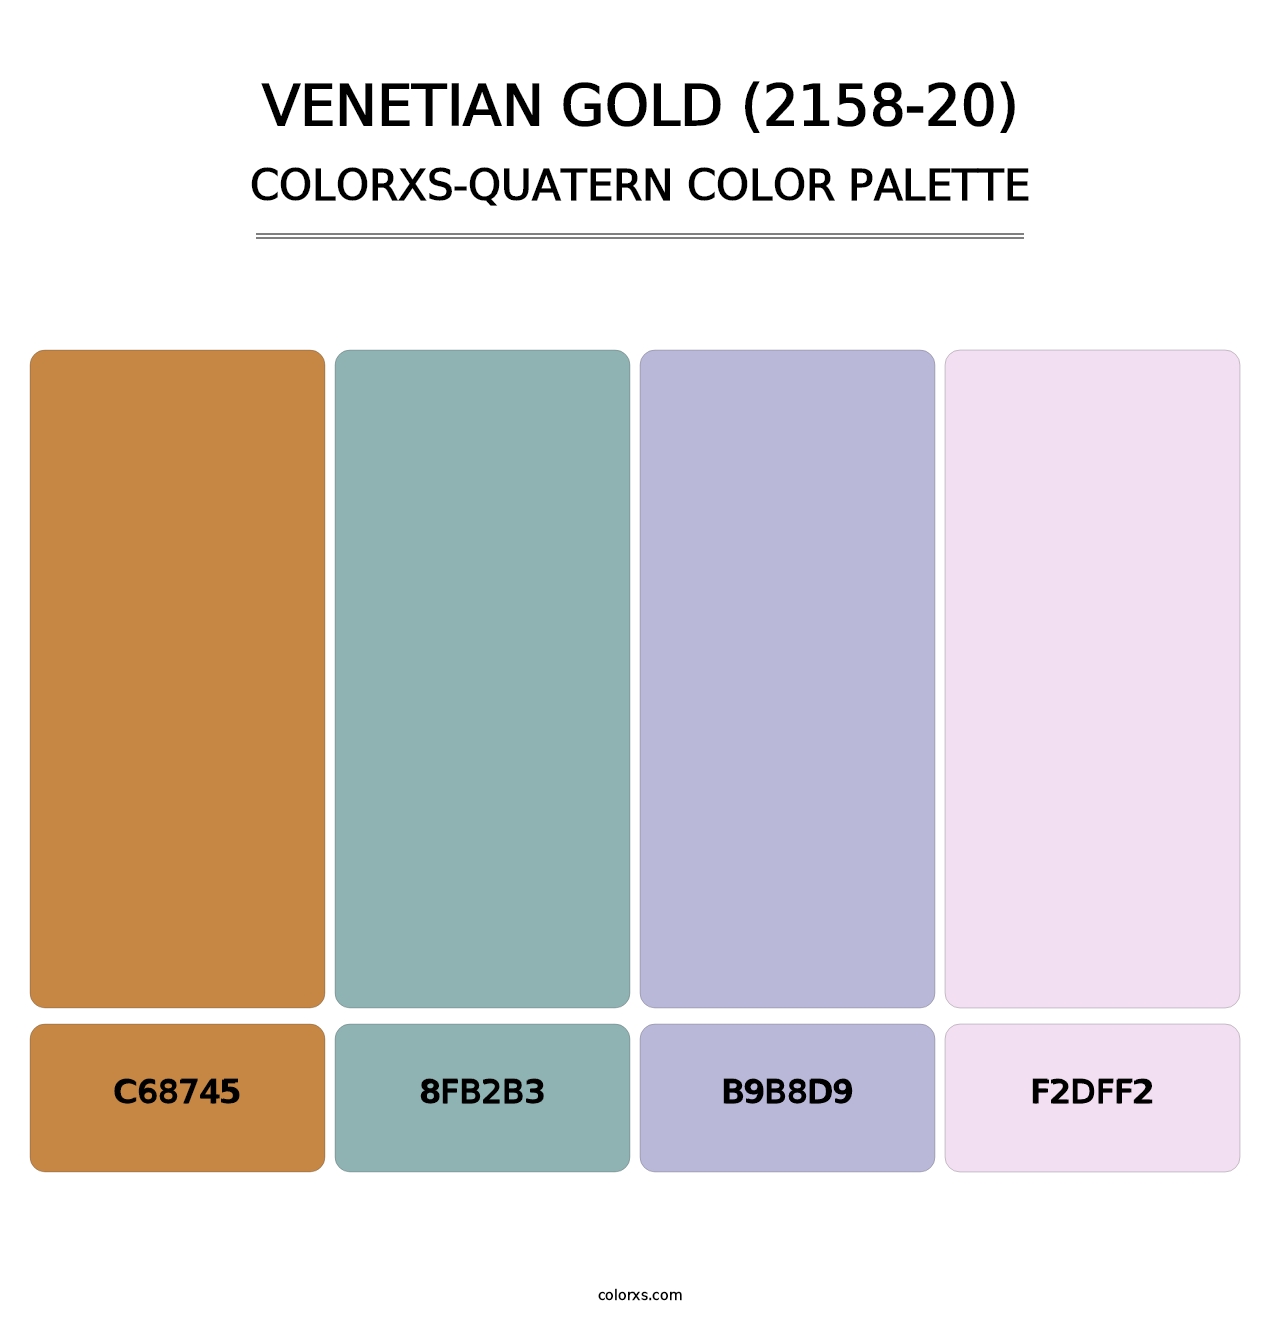 Venetian Gold (2158-20) - Colorxs Quatern Palette